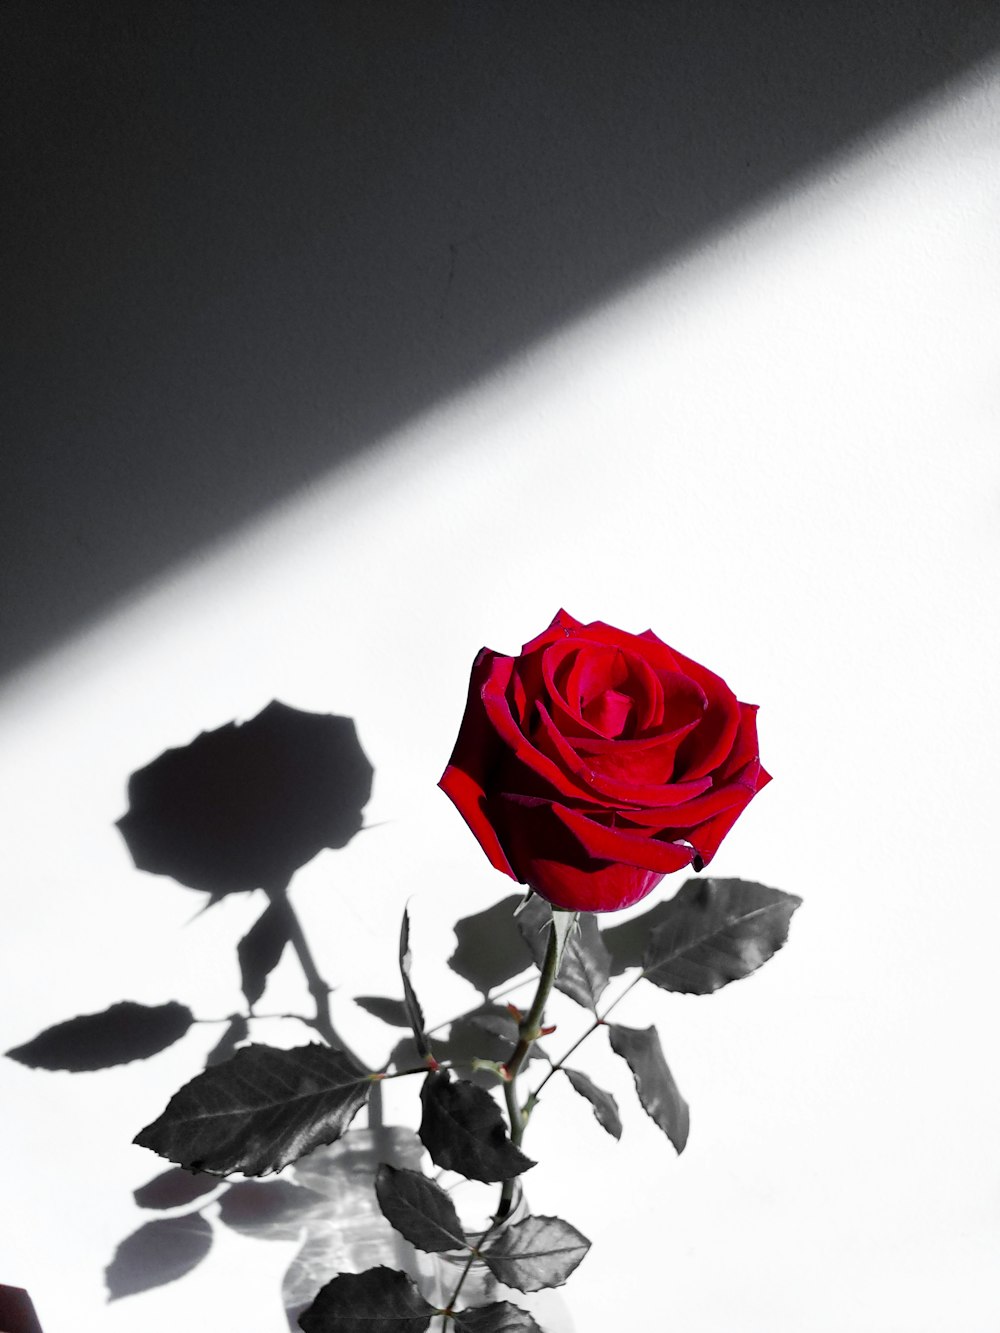 350+ Red-Rose Images [HQ] | Download Free Unsplash